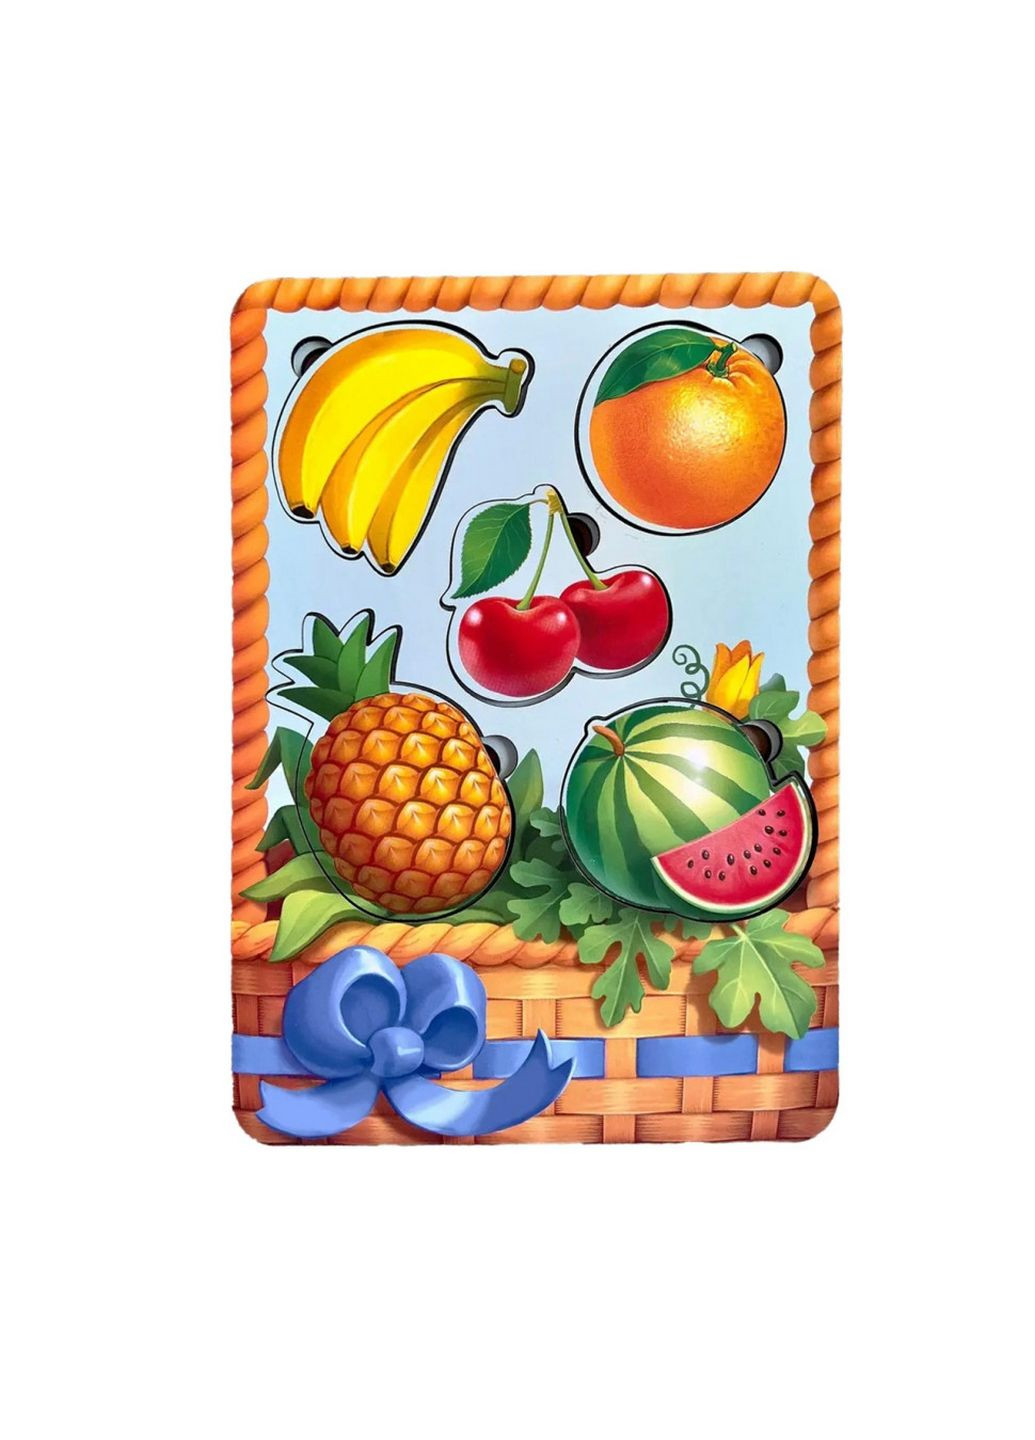 Настольная развивающая игра "корзина с фруктами-1" сортер-вкладыш Ubumblebees (282589463)